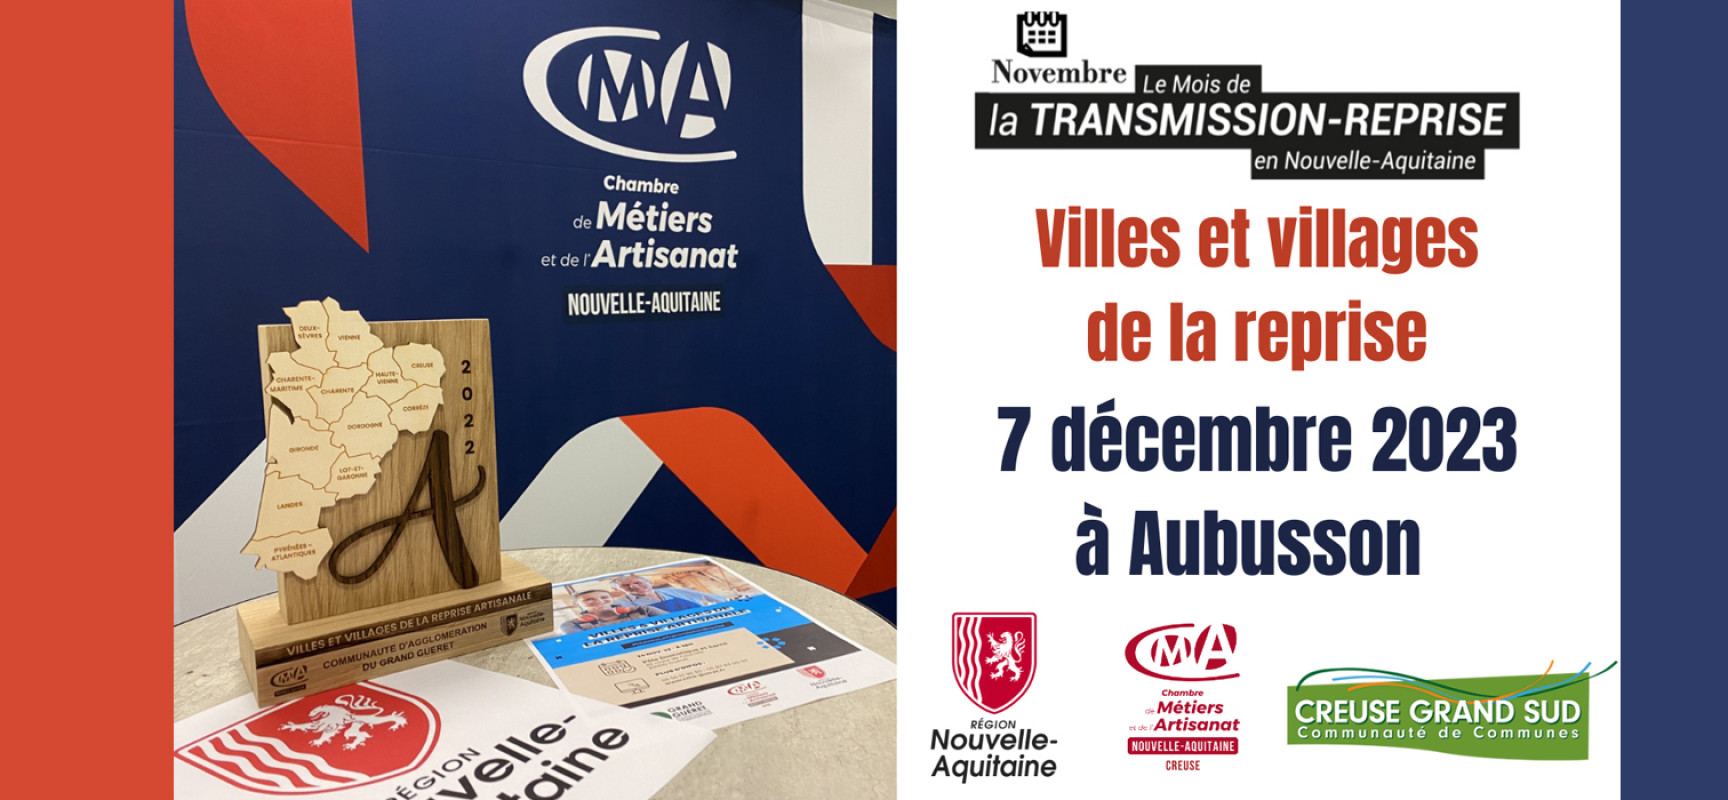 [MoisTransmissionReprise] Table-ronde sur la transmission-reprise d’entreprises artisanales – 7 décembre Aubusson #CMA23